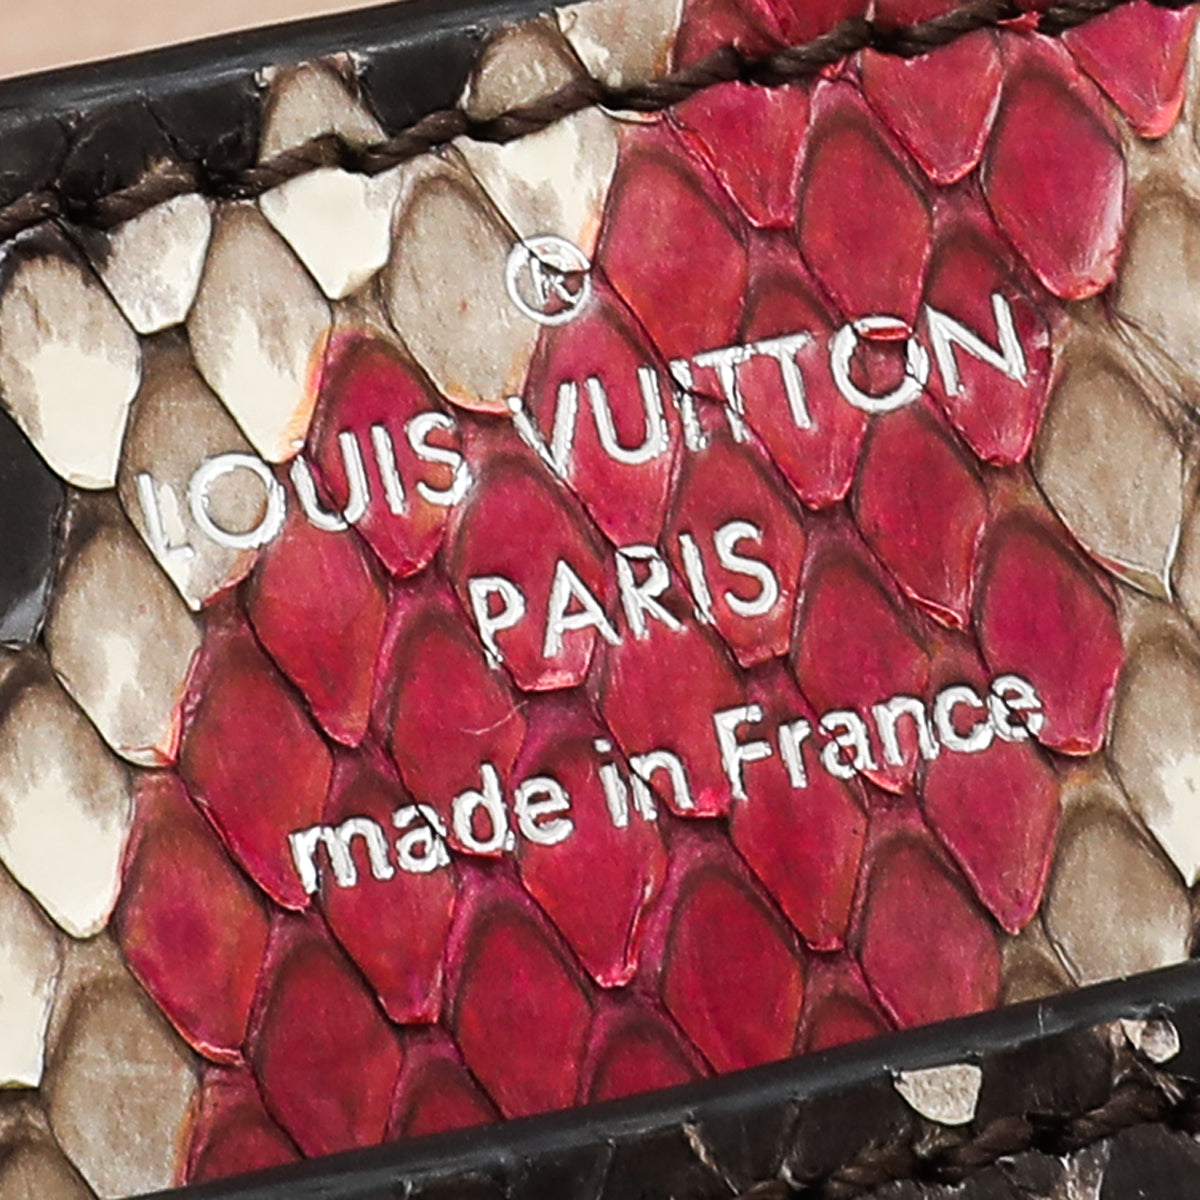 Louis Vuitton Bicolor Python Chain Louise MM Bag